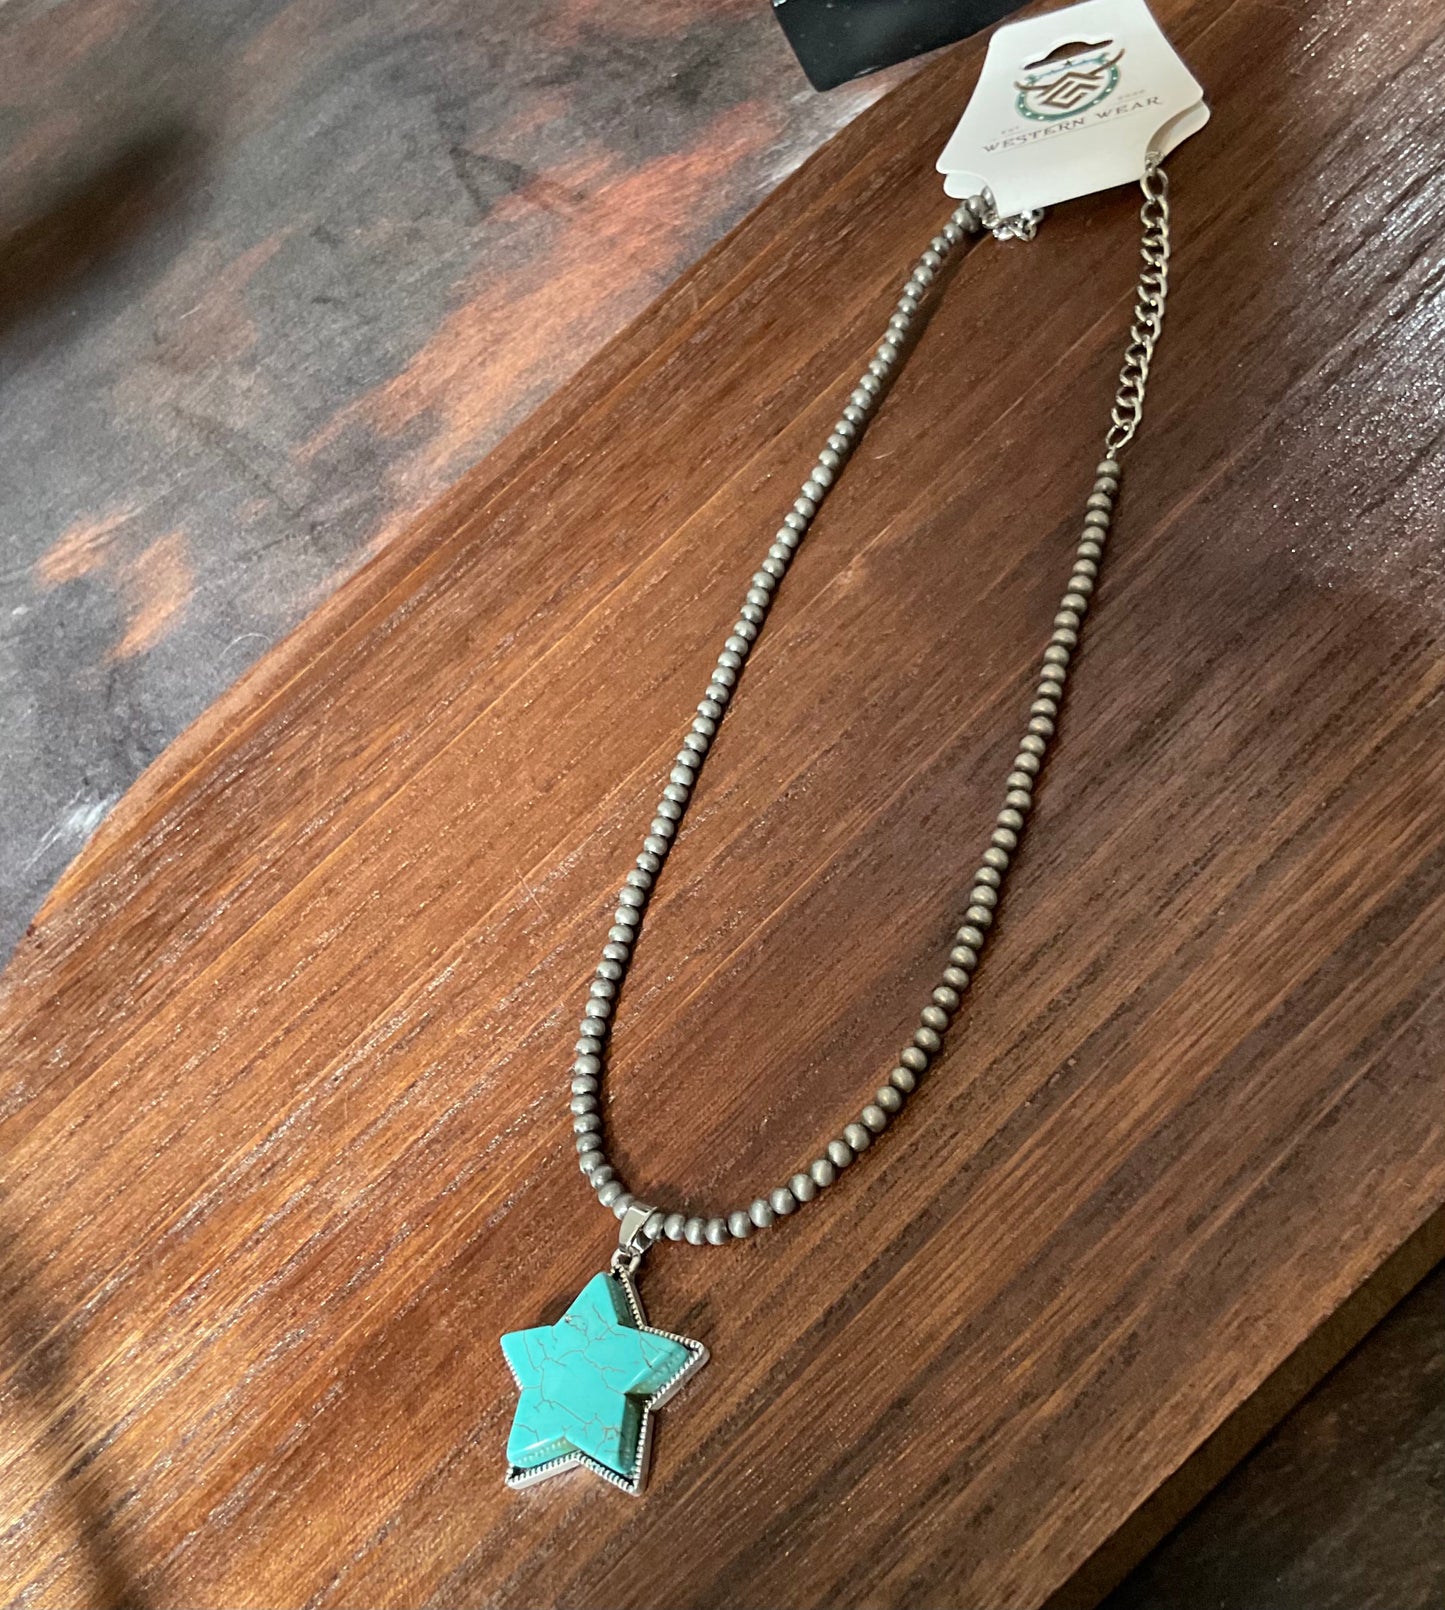 Navajo star necklace